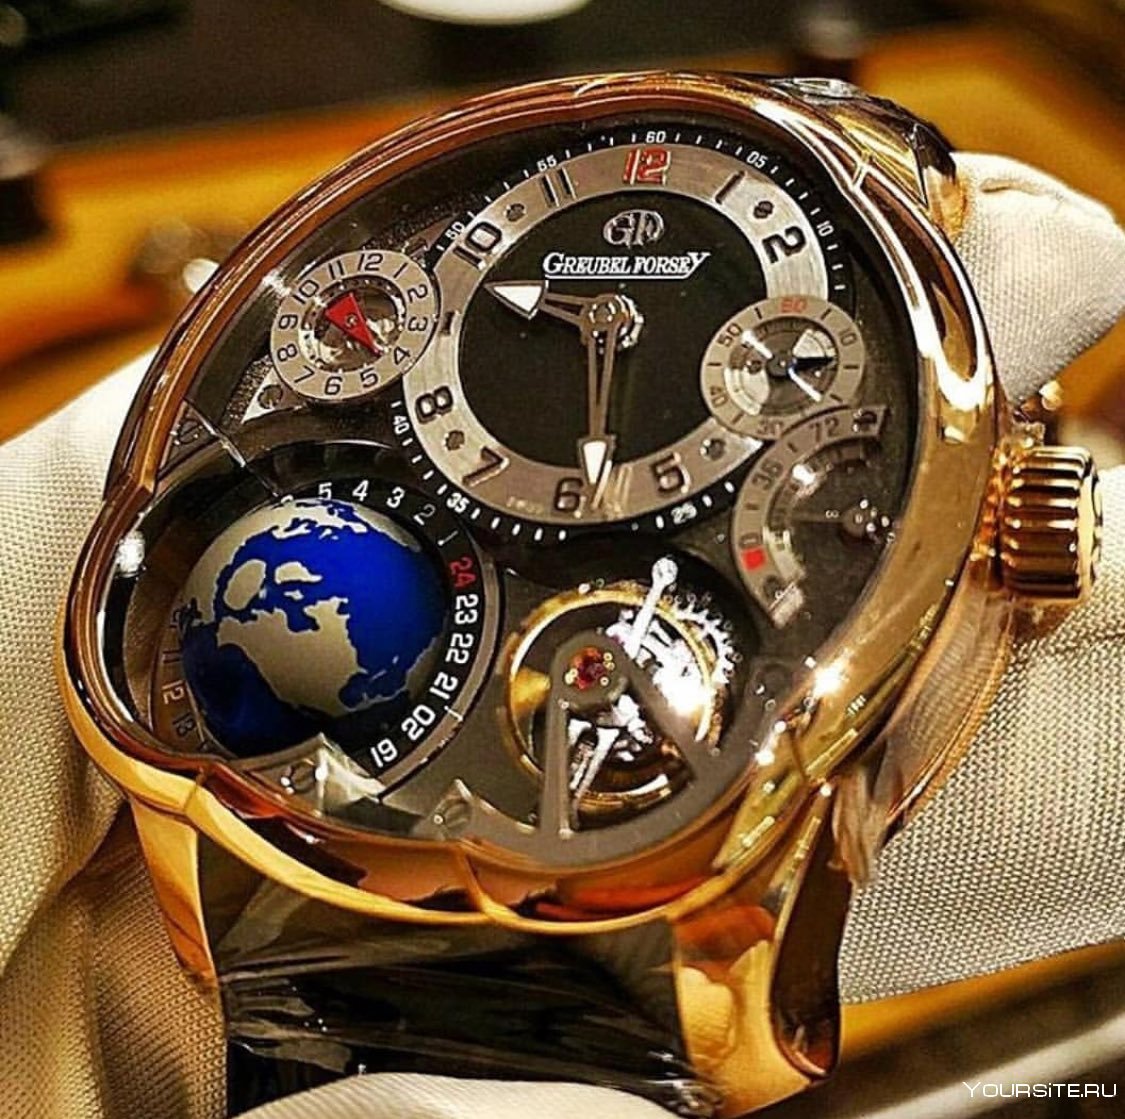 Купить б у часы наручные. Швейцарские хронографы турбийон. Красивые мужские часы. Необычные часы. Дорогие часы мужские.